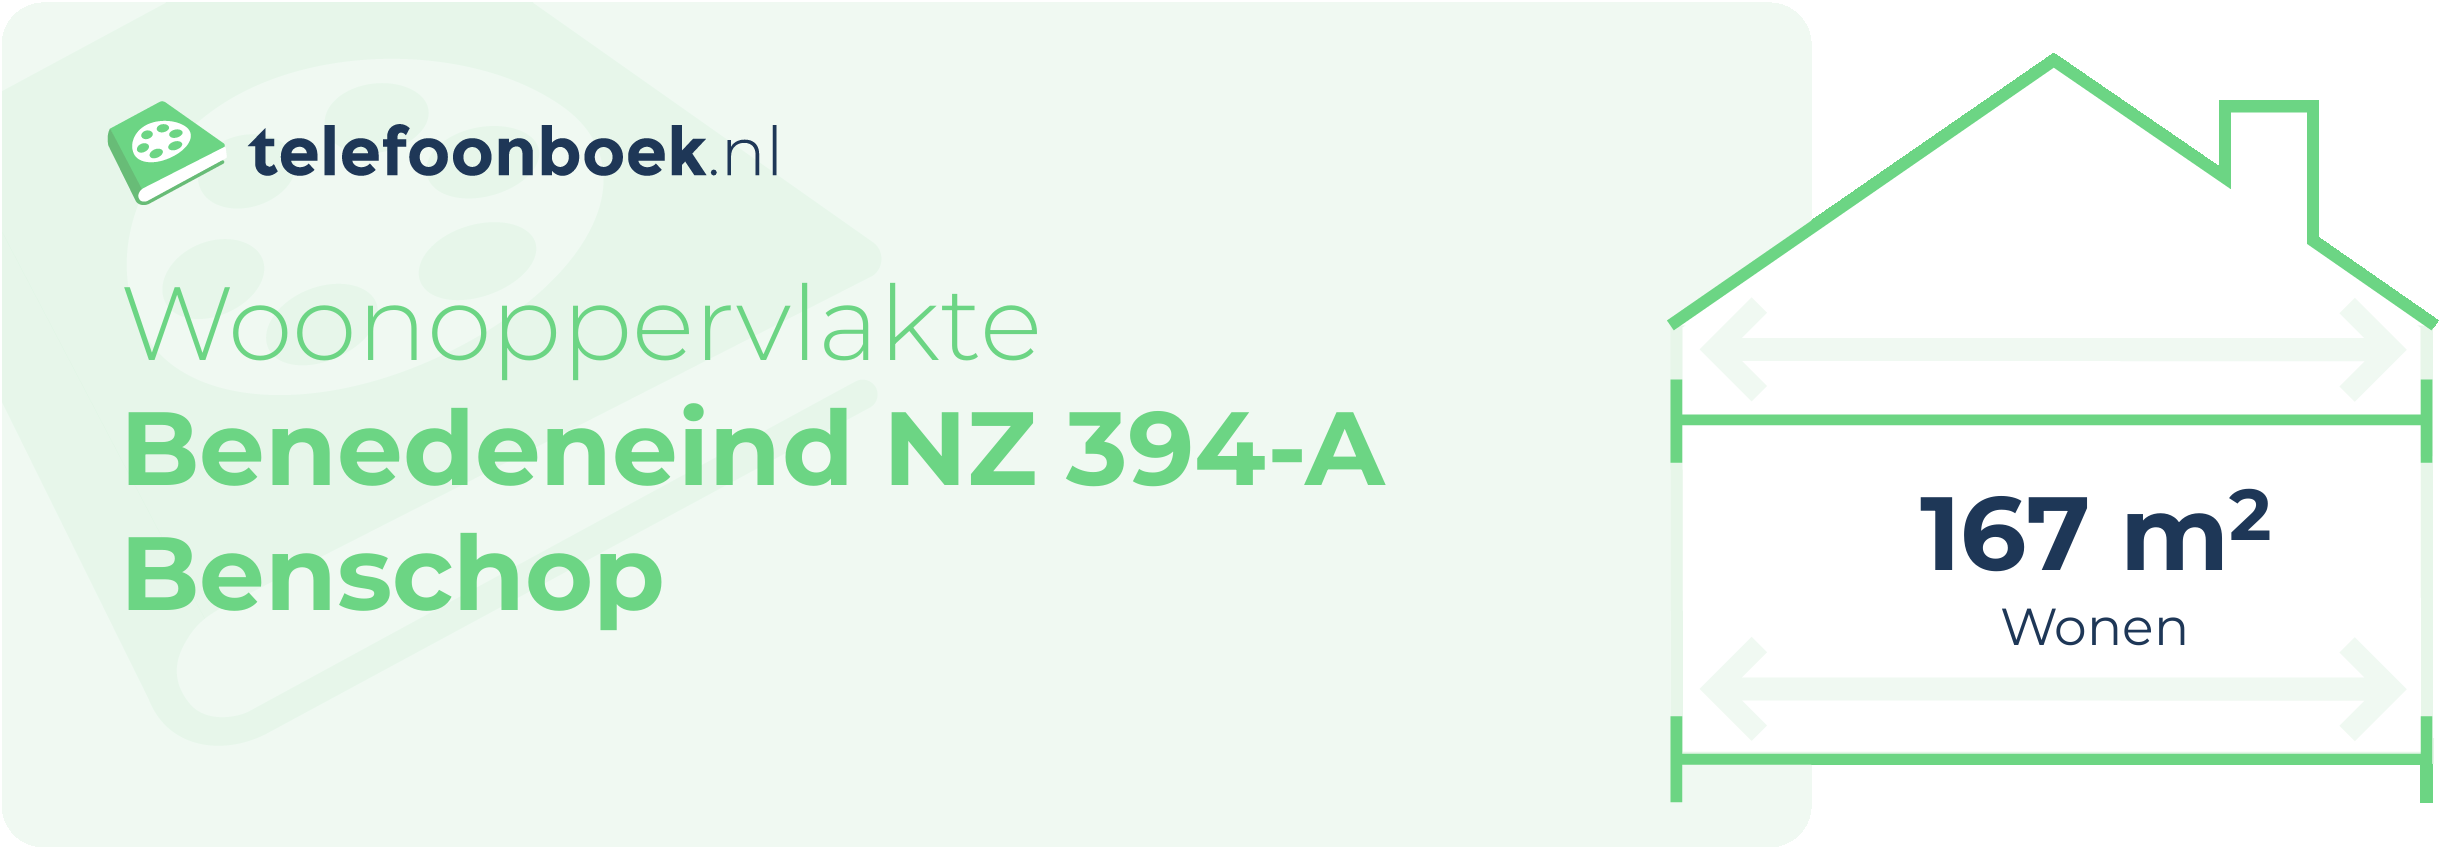 Woonoppervlakte Benedeneind NZ 394-A Benschop